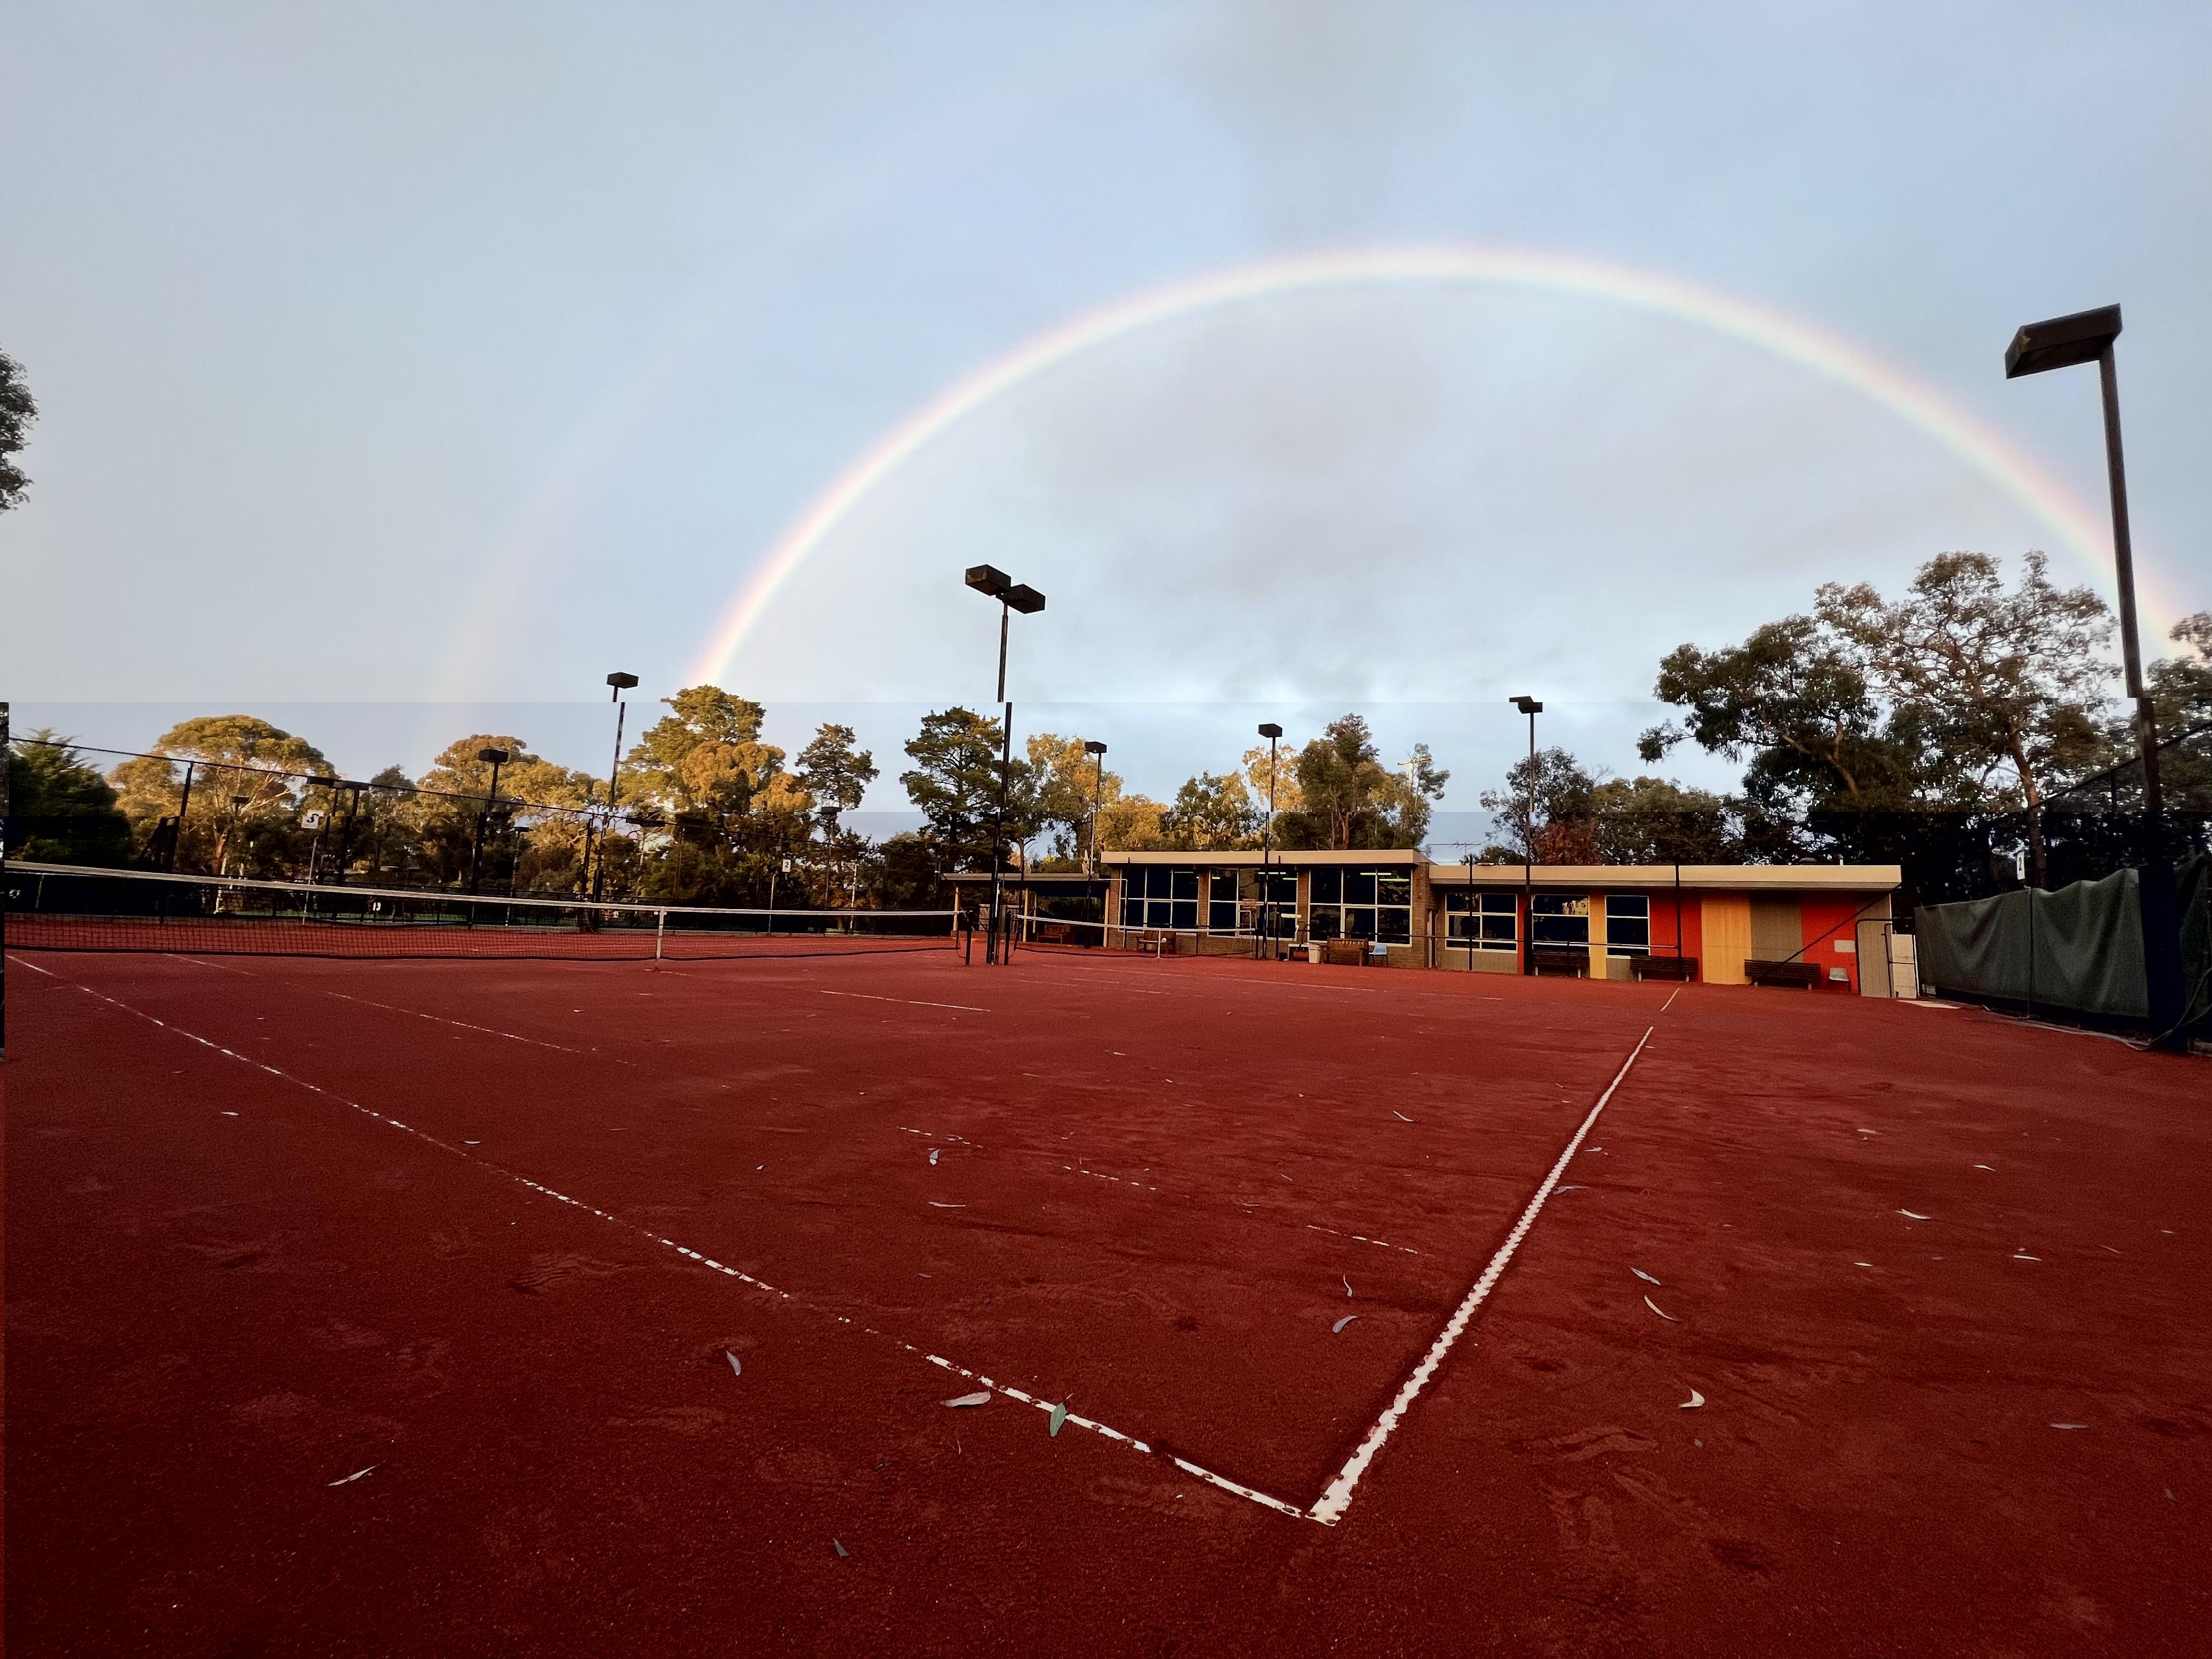 Rainbow over a clay tennis court